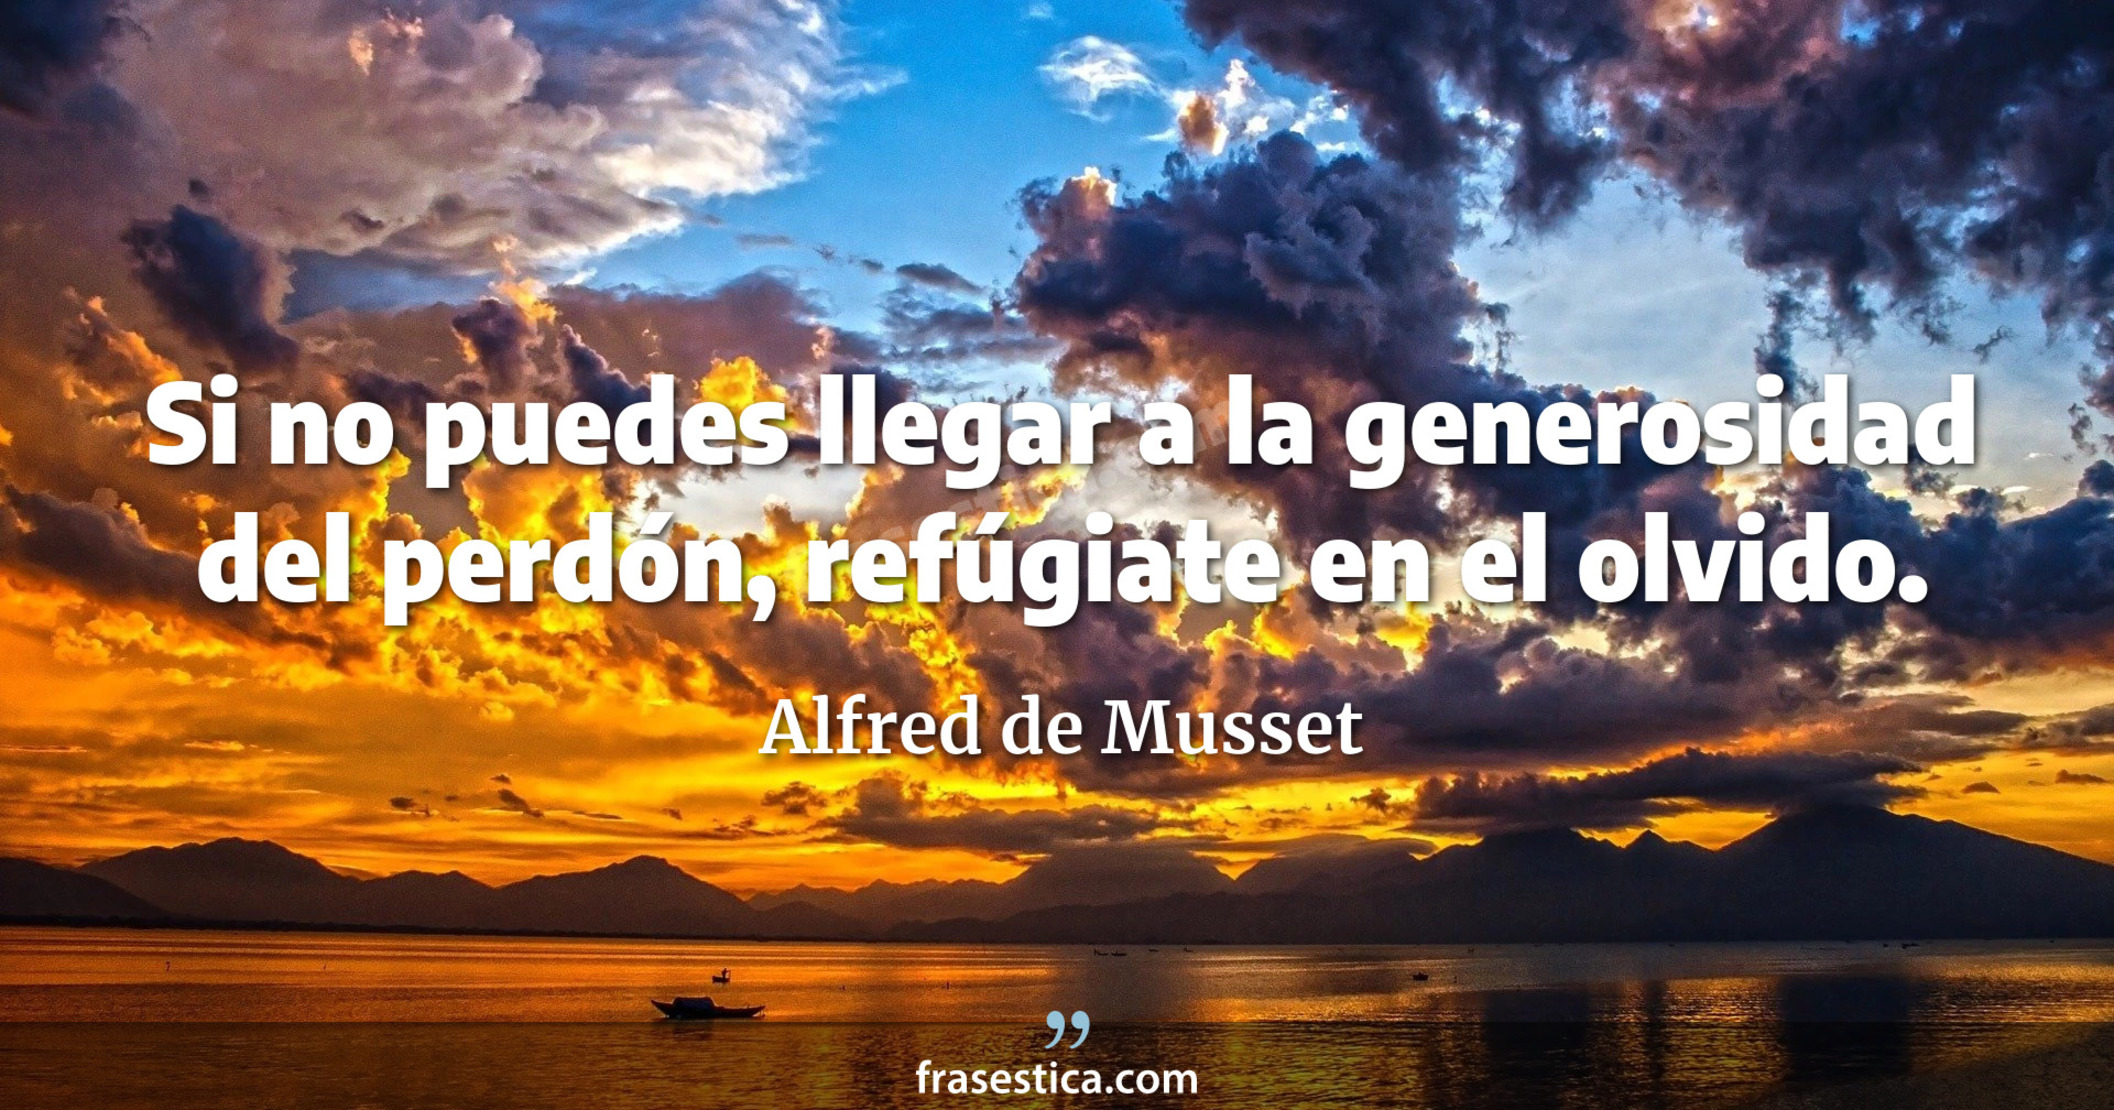 Si no puedes llegar a la generosidad del perdón, refúgiate en el olvido.  - Alfred de Musset